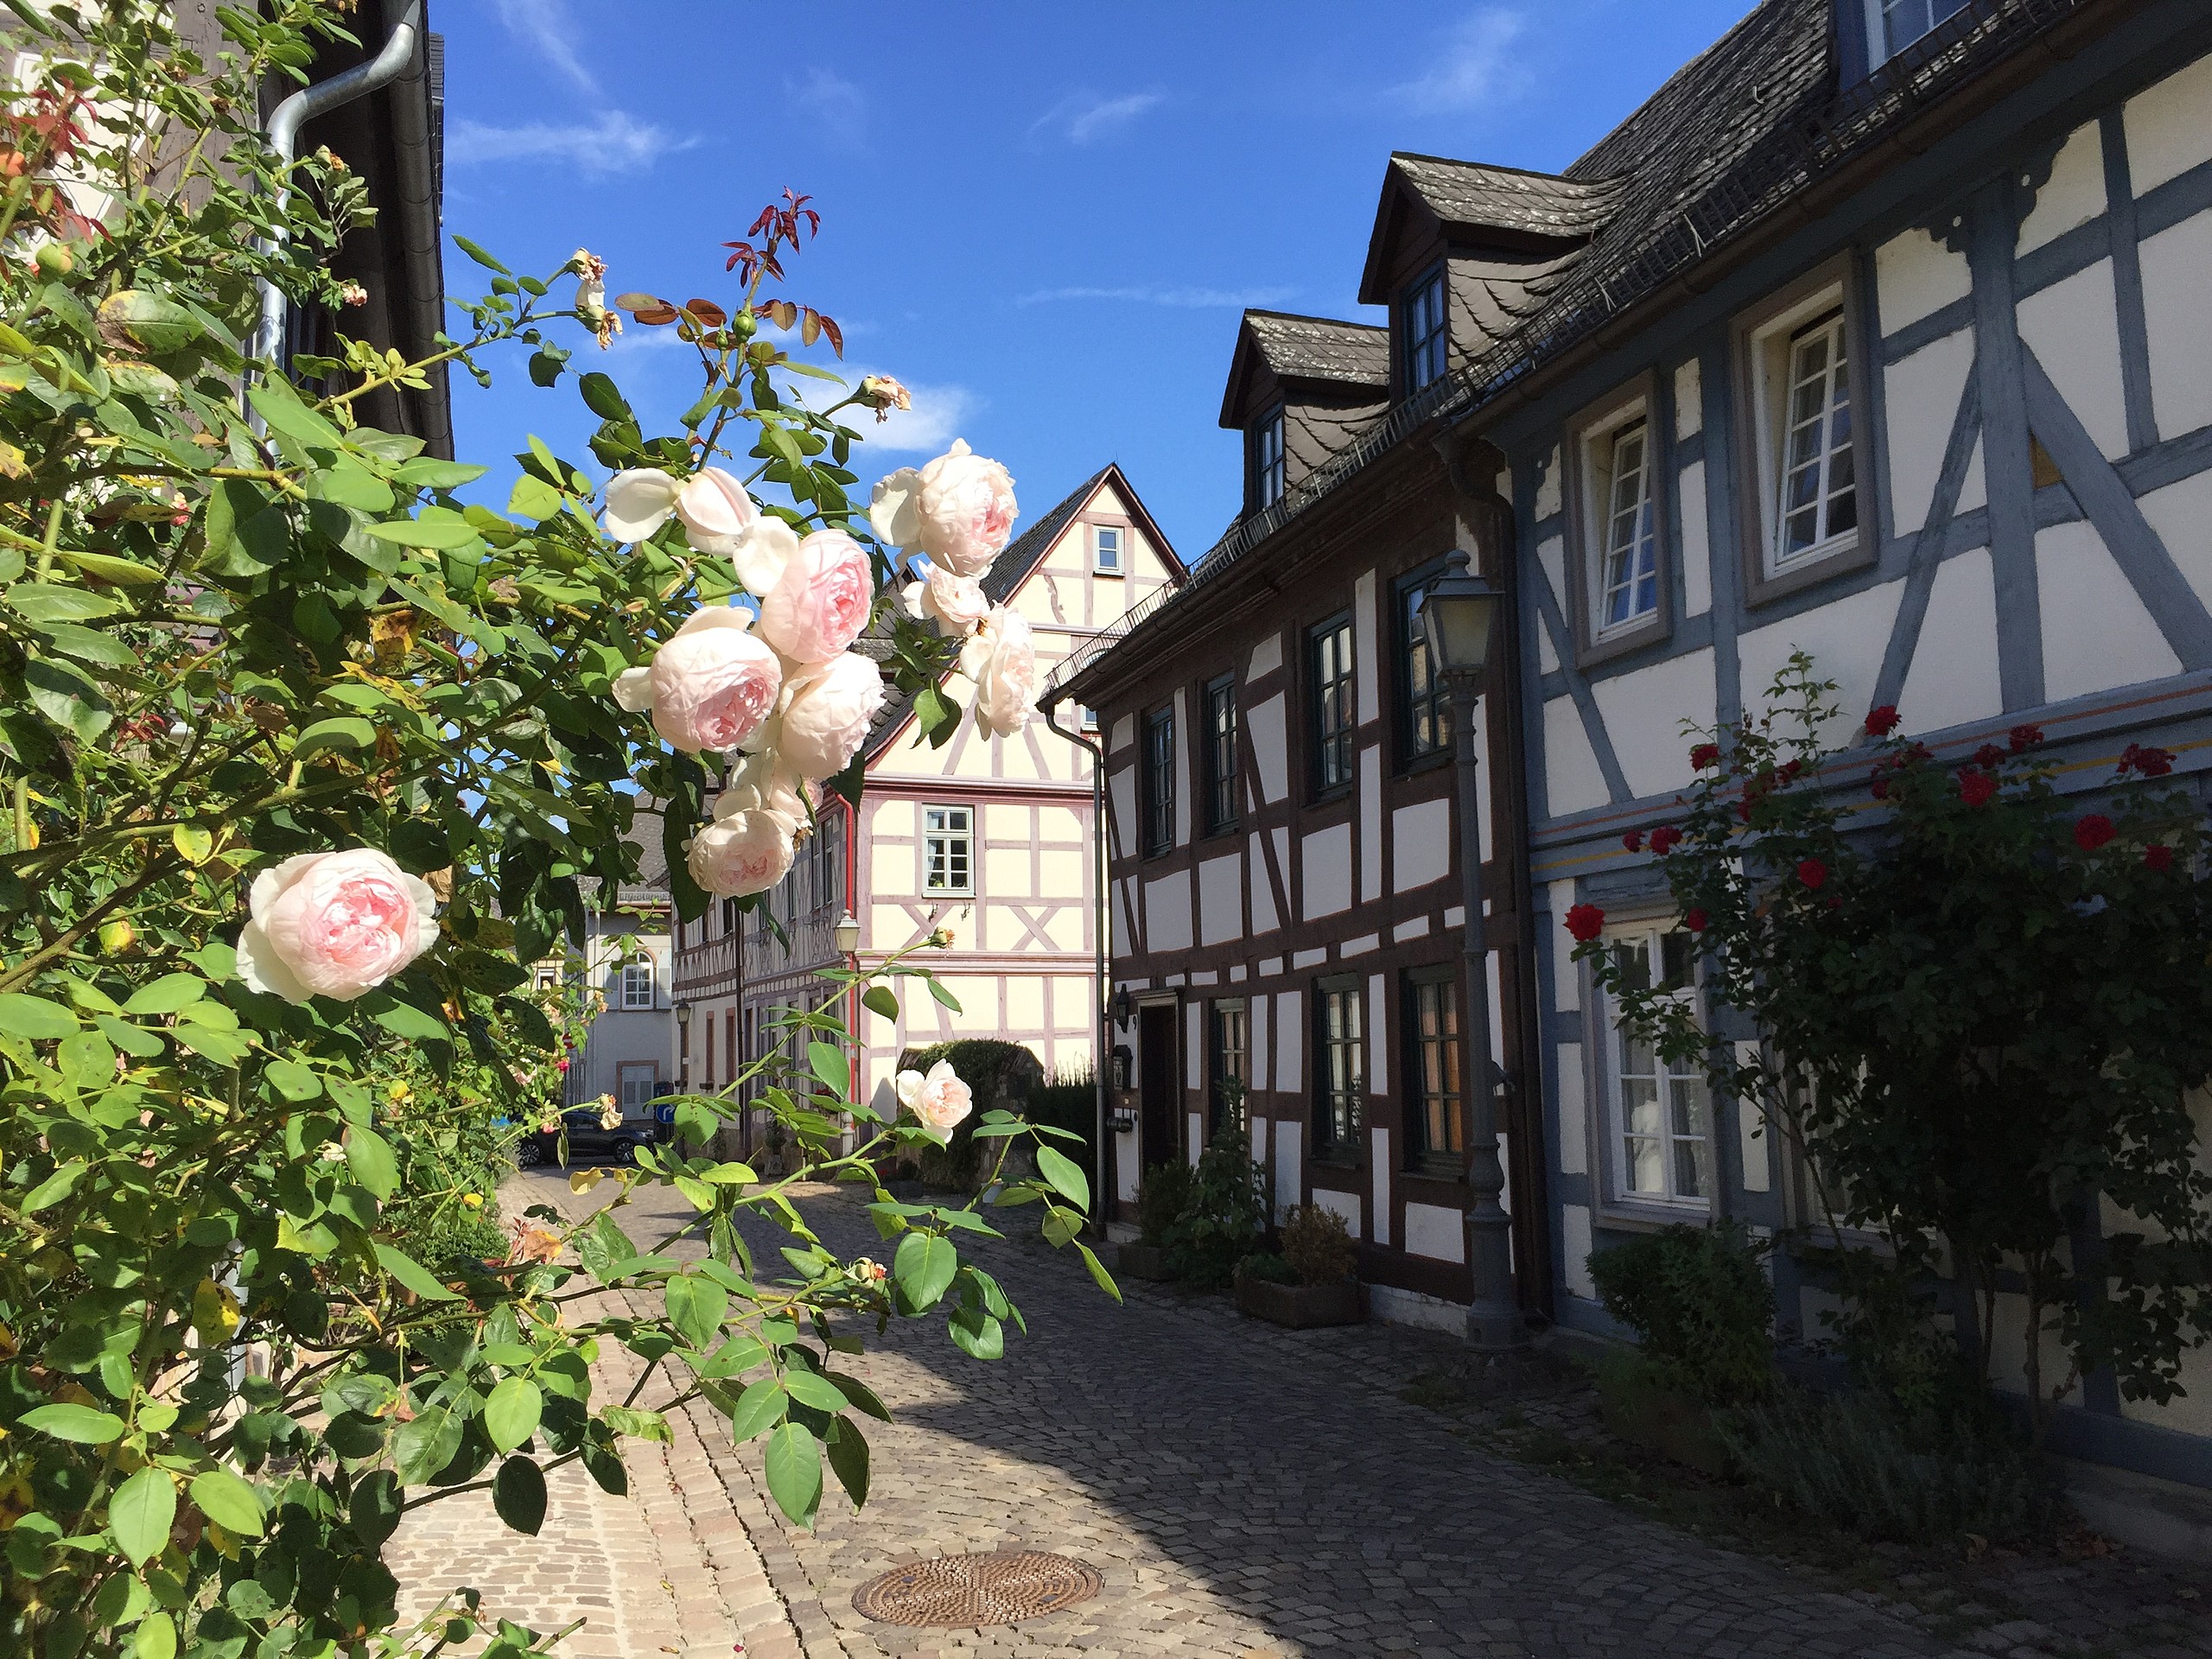 Eltville ist nicht nur die größte Stadt des Rheingau, sondern hat auch schönes Fachwerk nebst den Rosen zu bieten